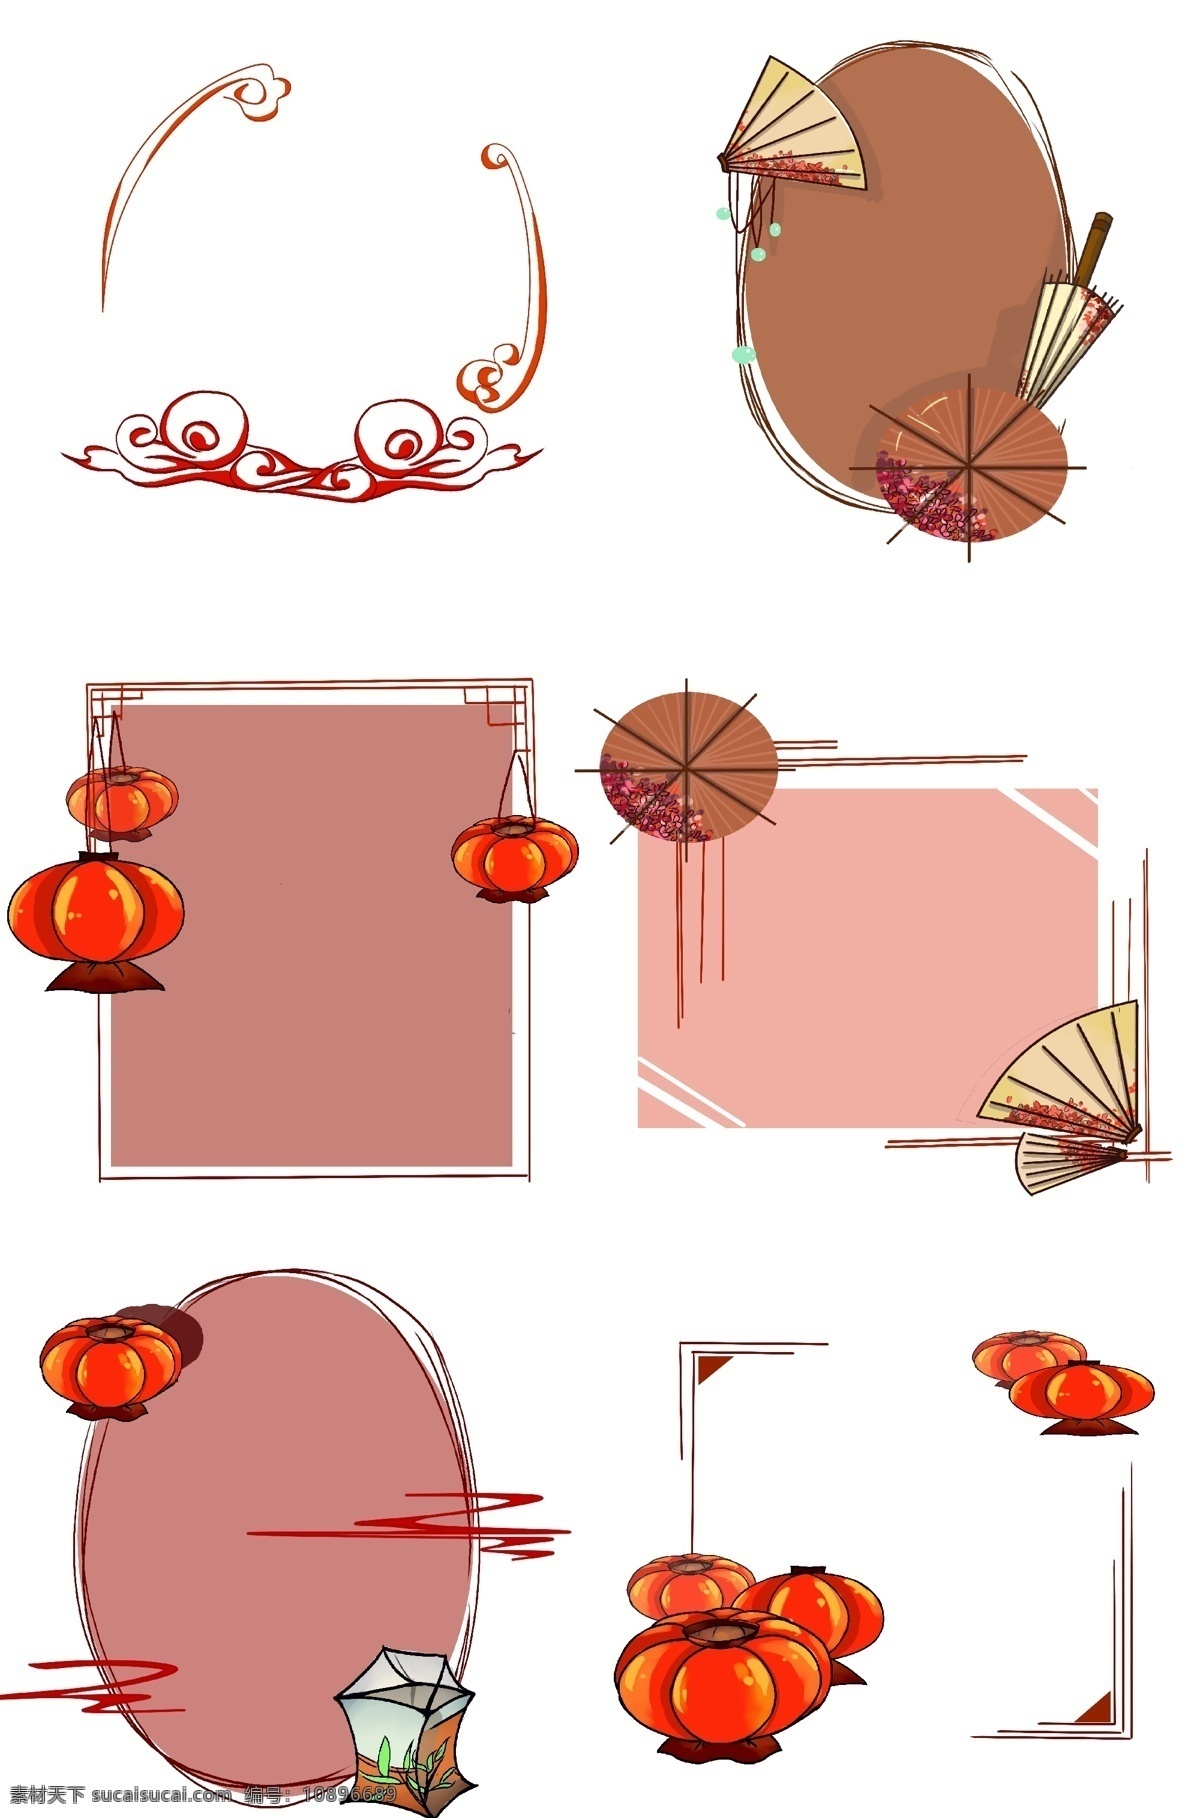 中国 风 红 边框 合集 古典 中国风 淡雅 三角形 手绘卡通 油纸伞 梅花 简约典雅 方形边框 新年 古风纸扇